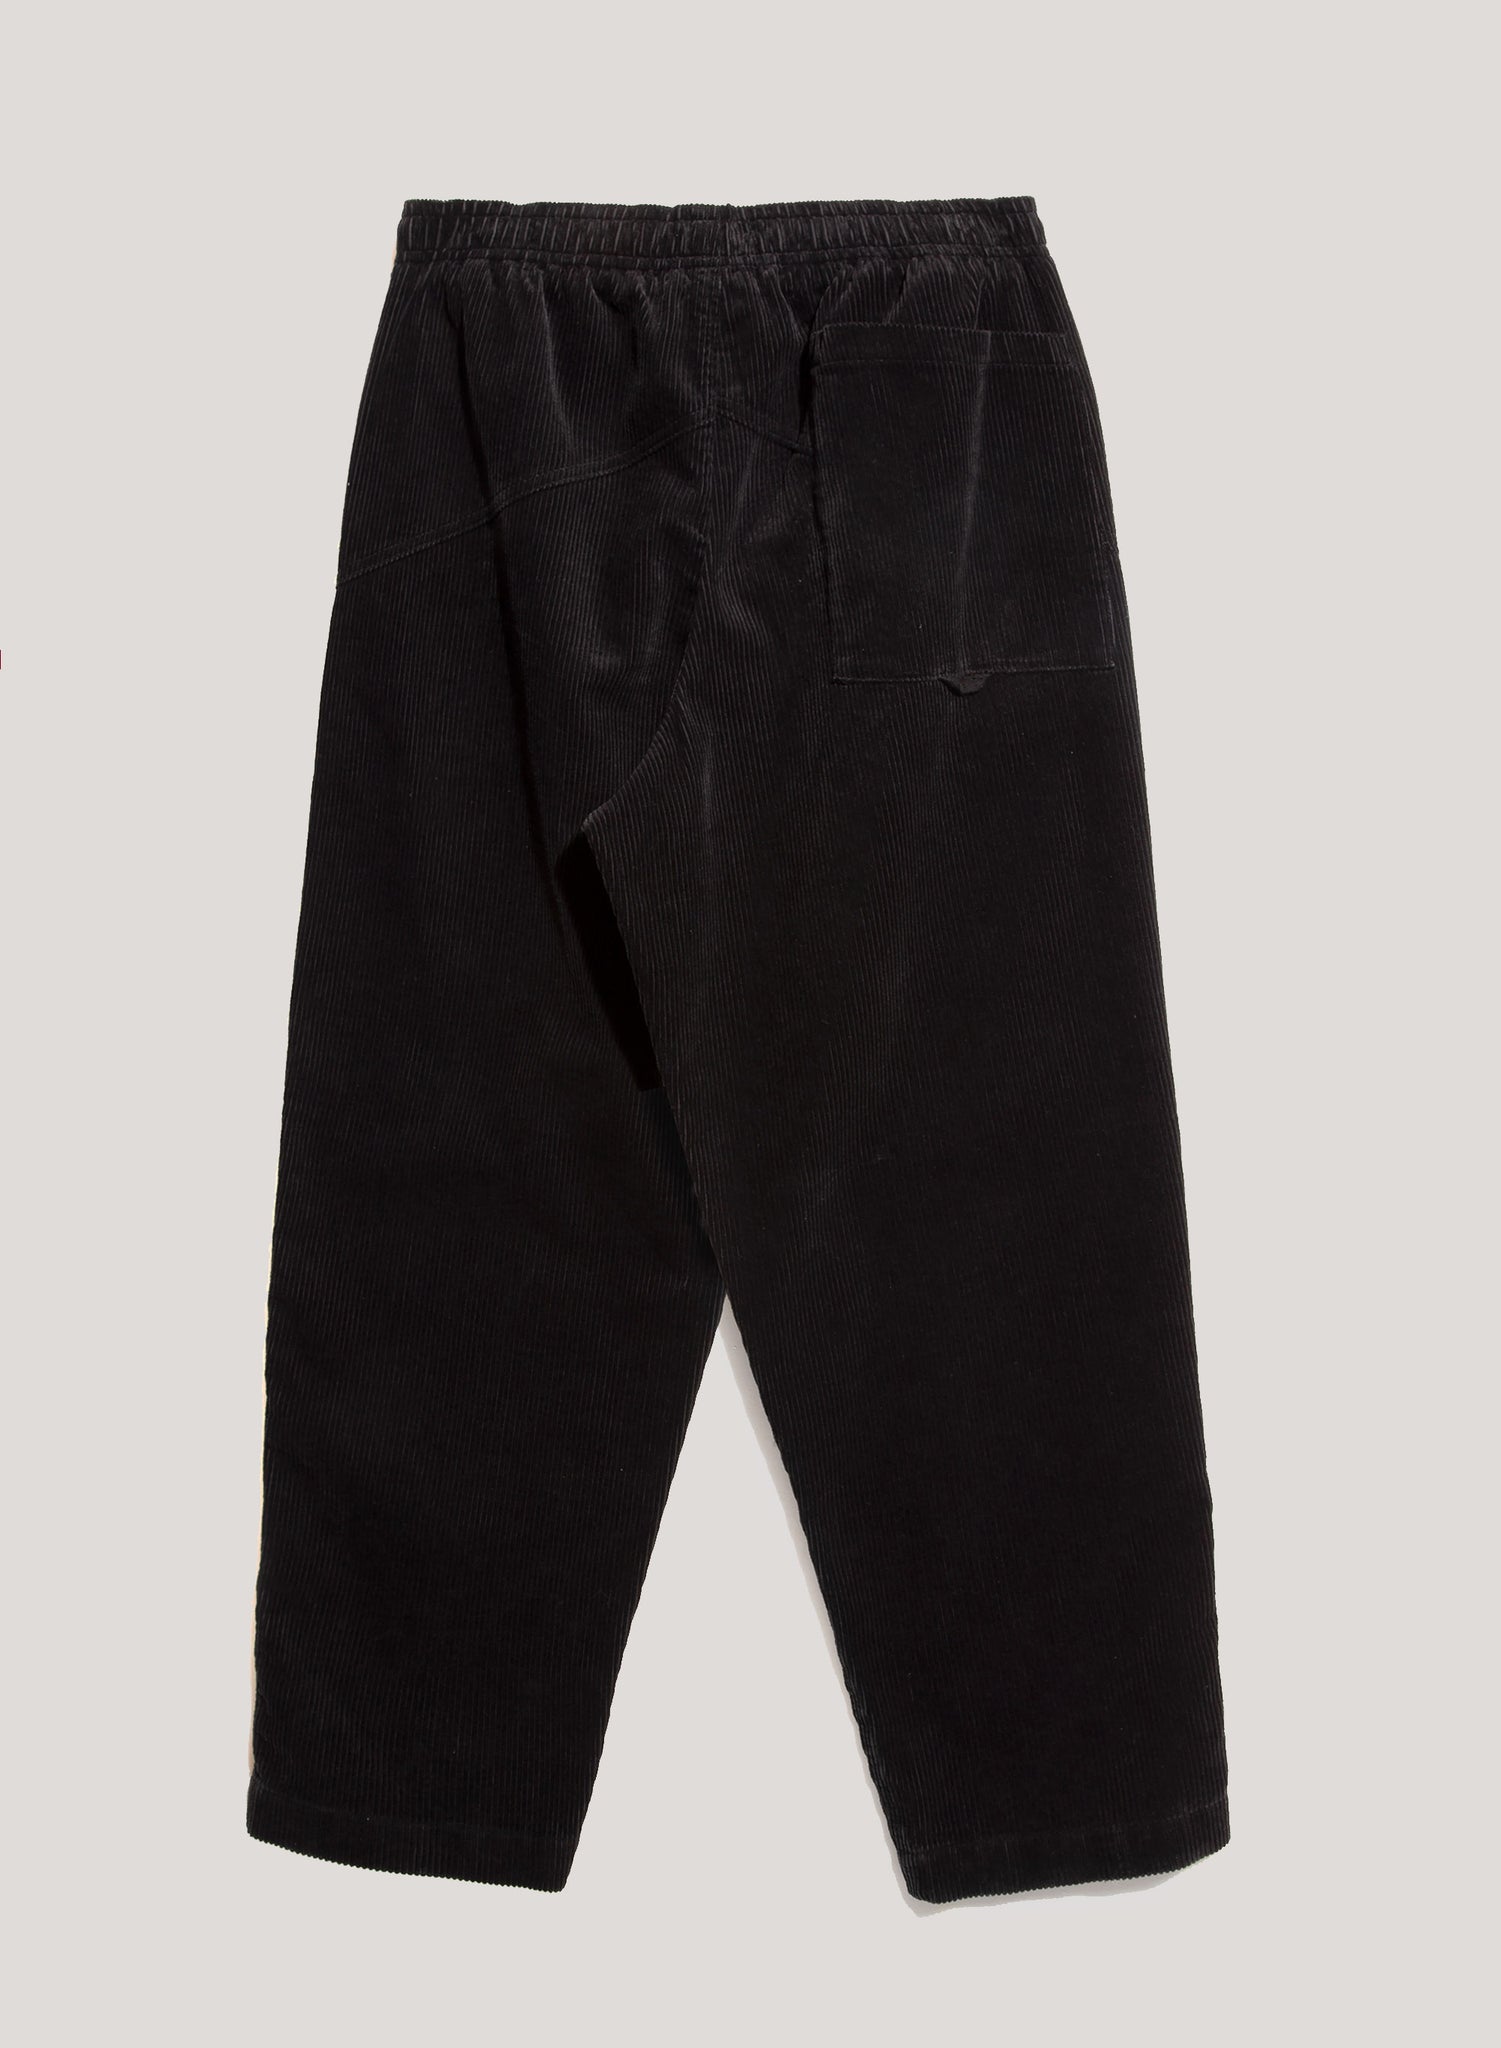 YMC Alva Skate Trouser Black Cord